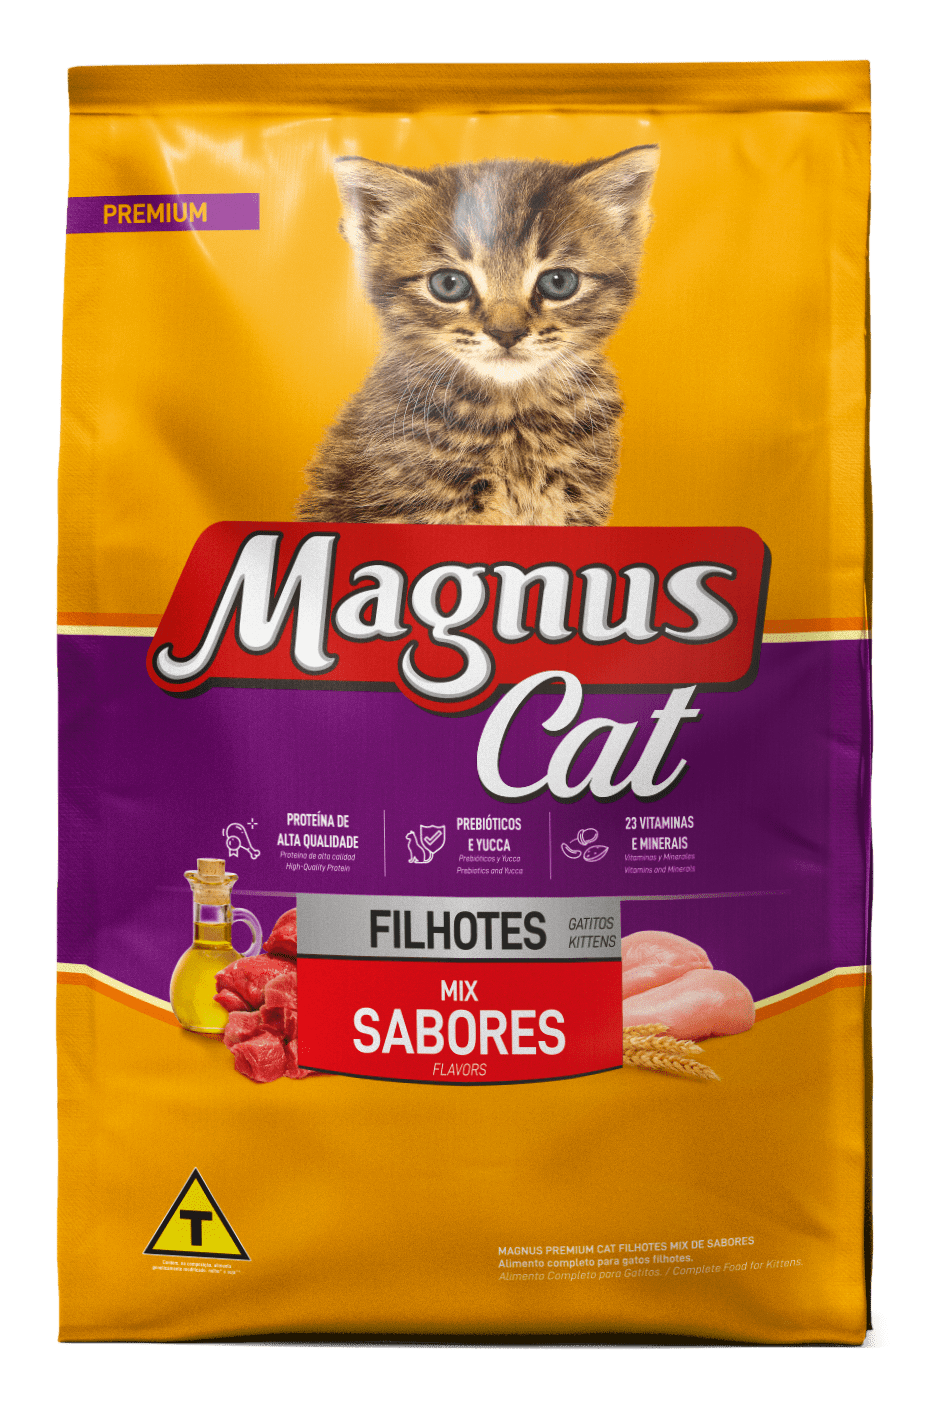 Magnus Premium Gatos Filhotes Mix de Sabores